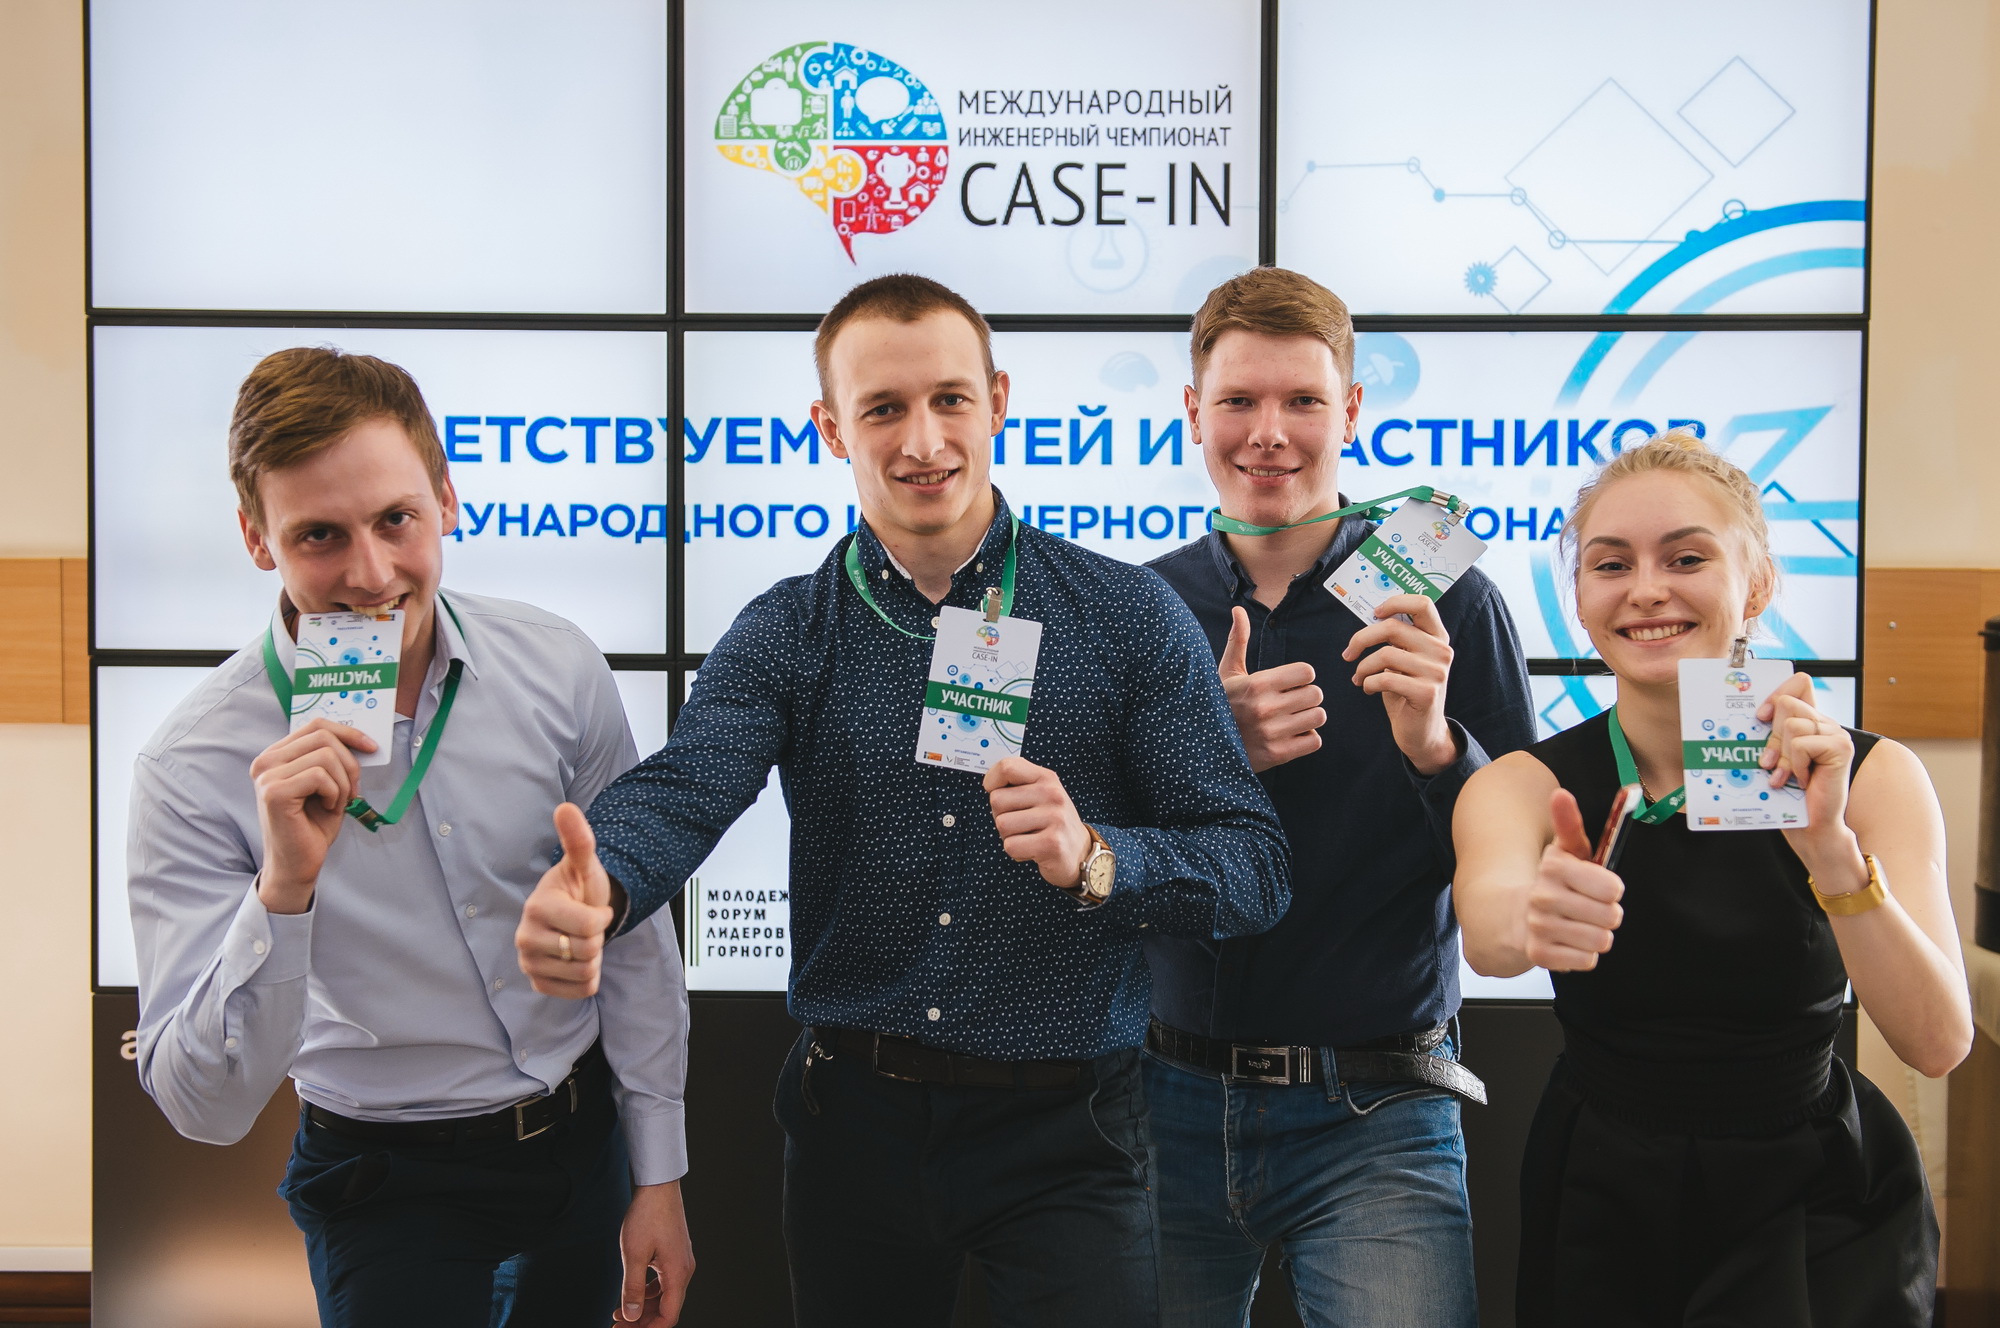 Международный инженерный чемпионат Case-In, фотография: К. Жуков 